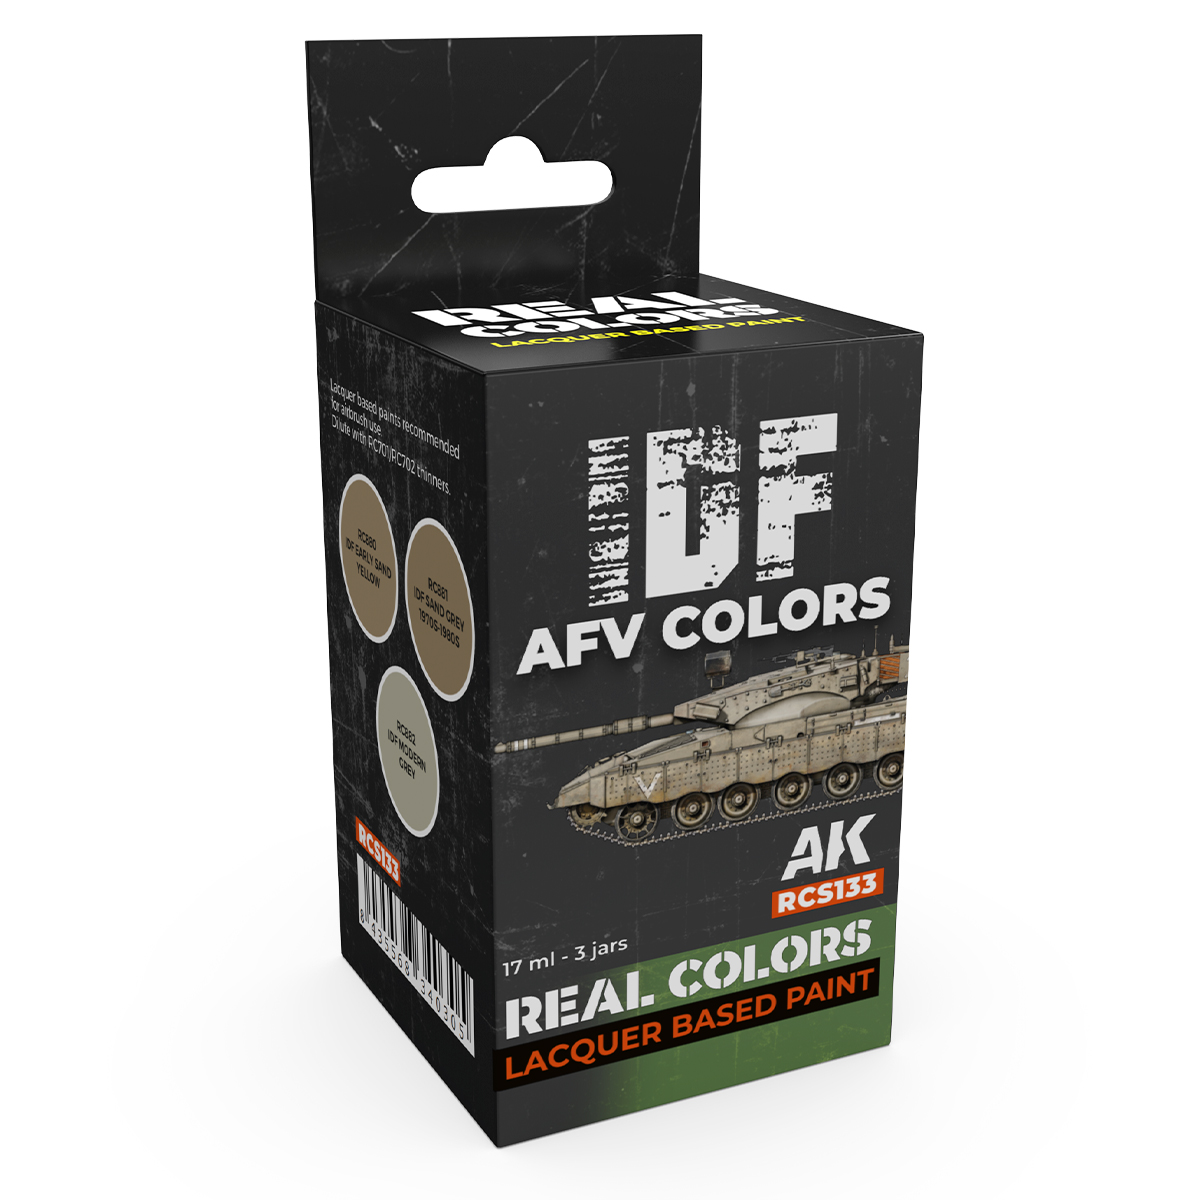 IDF AFV Colors